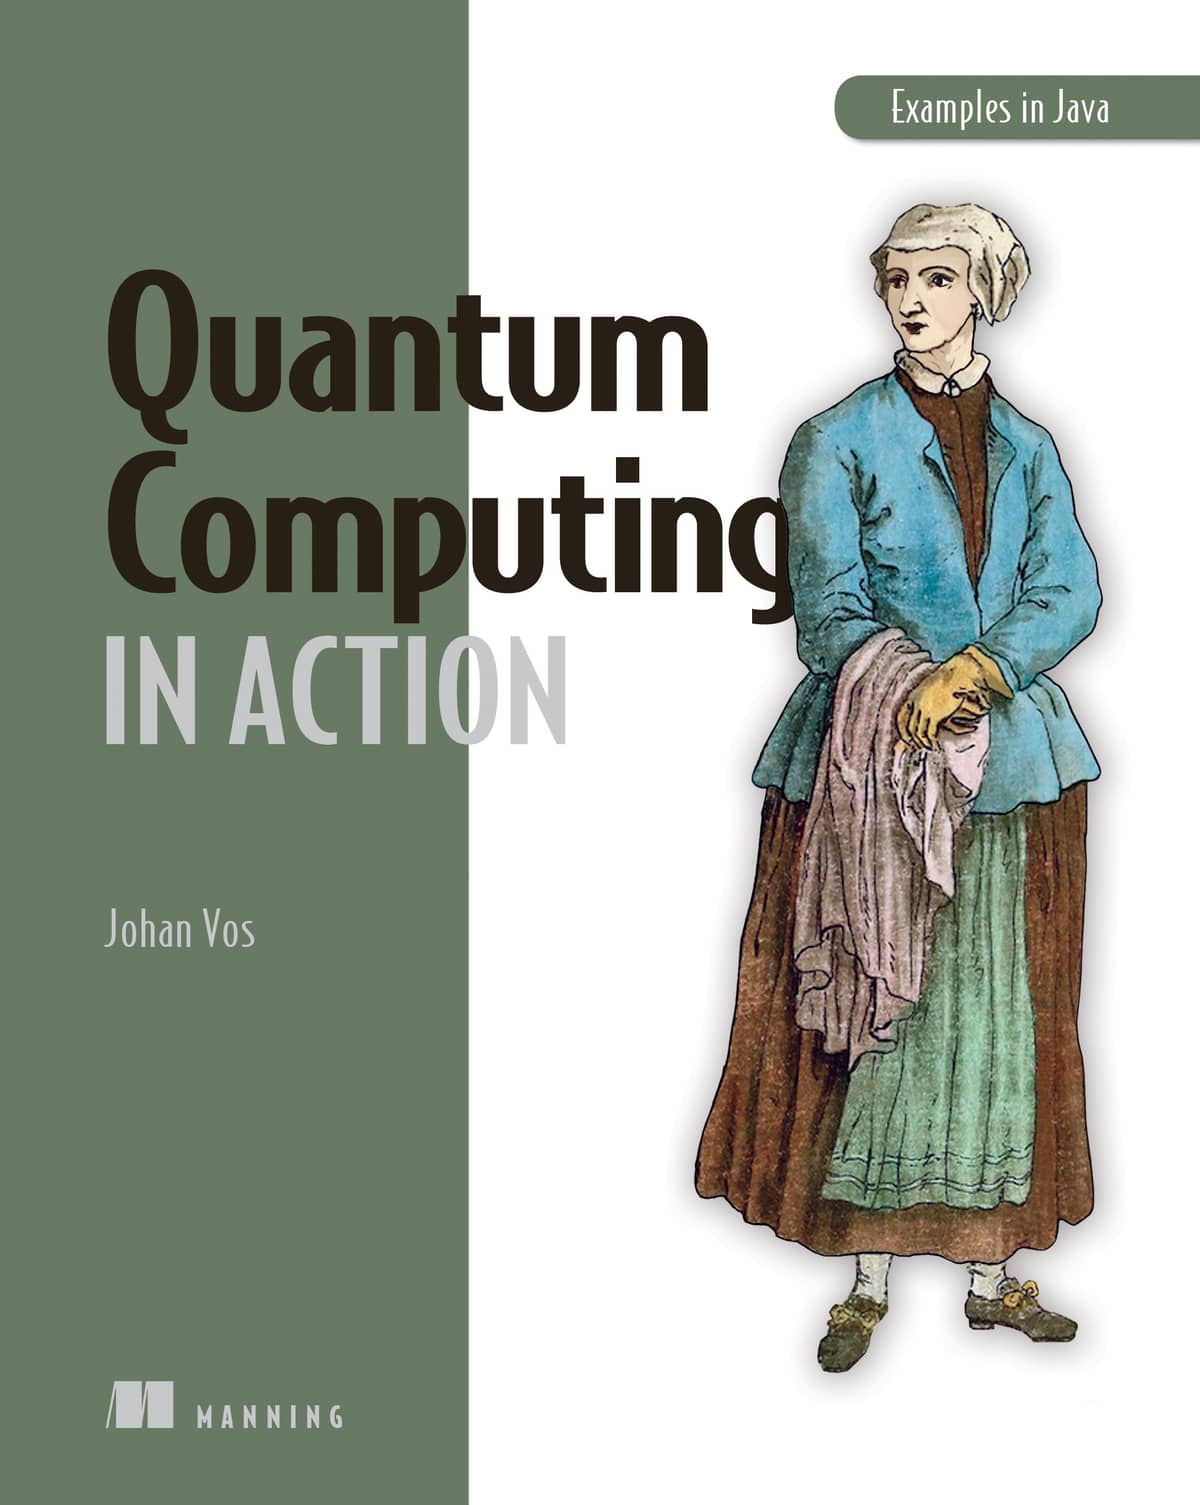 Quantum Computing in Action (Manning)